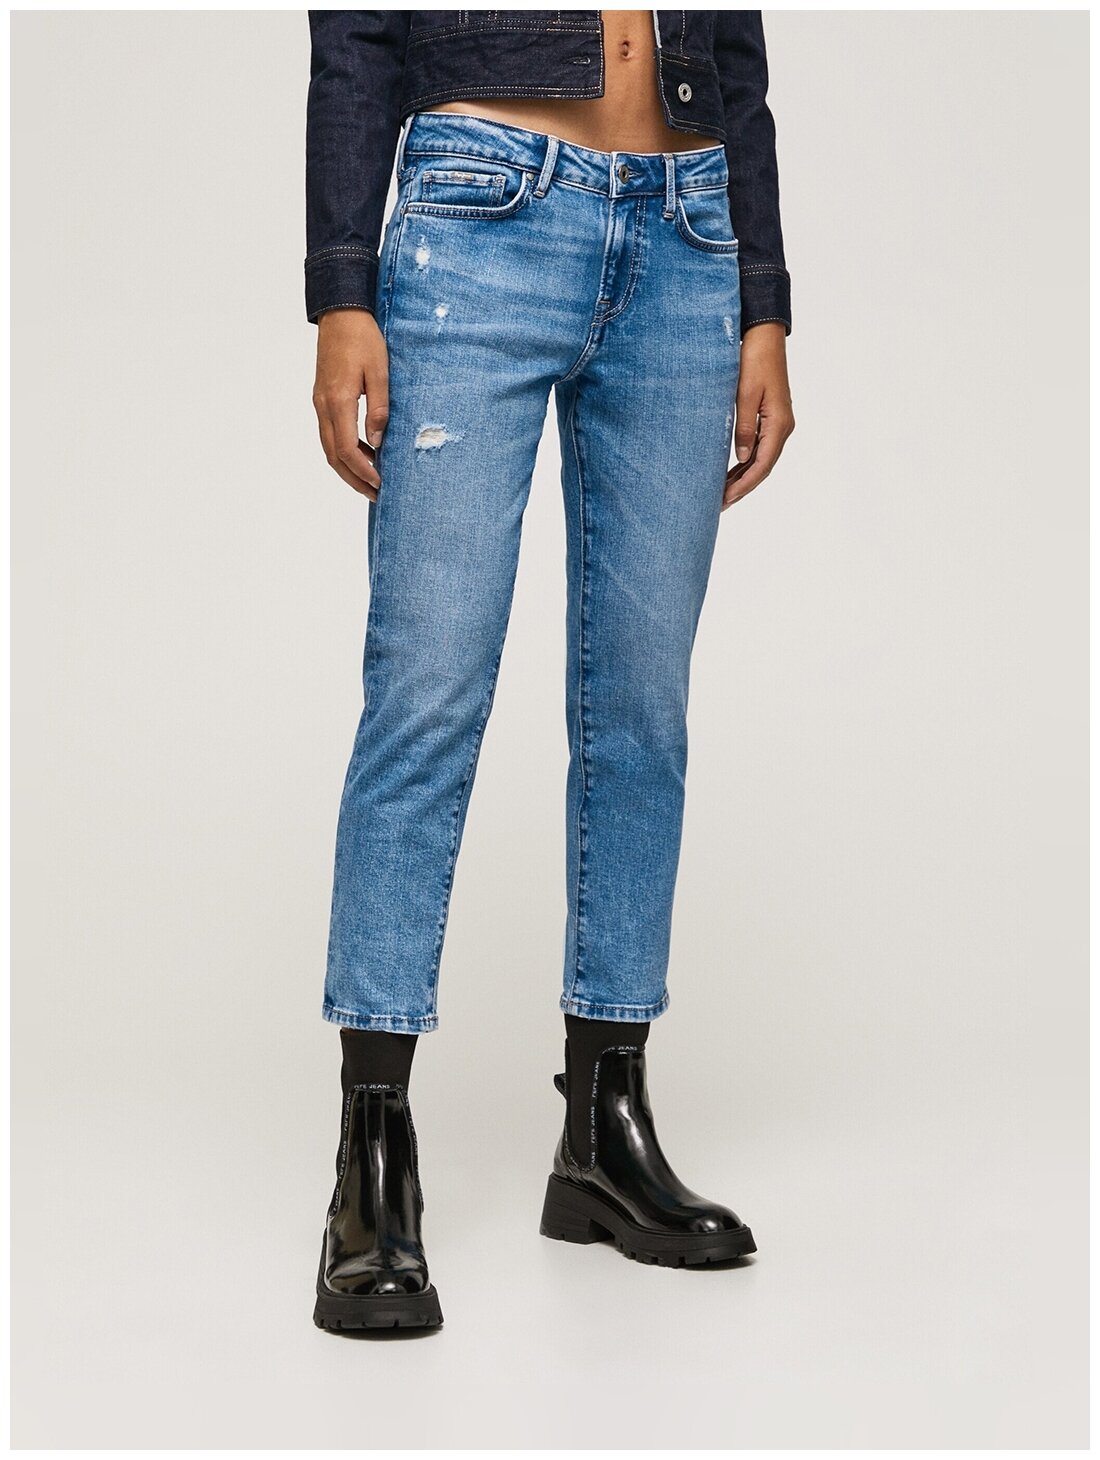 Женские джинсы Londos jeans PL204264VS9R, цвет: голубой, размер: 28